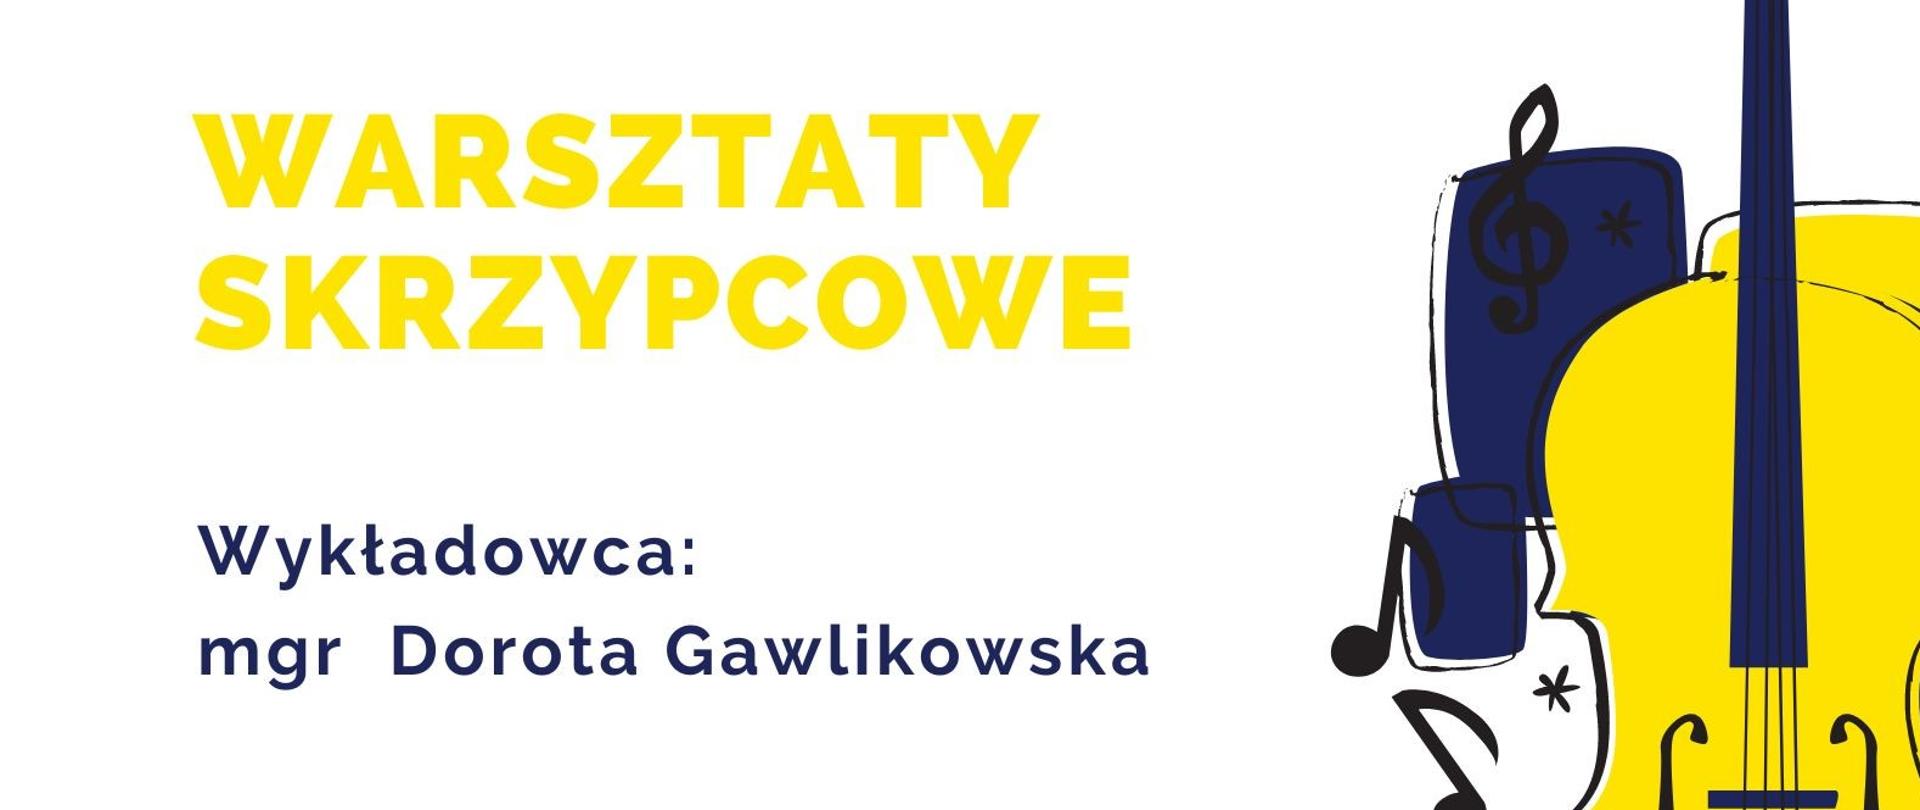 Plakat warsztatów skrzypcowych na białym tle, z żółtą ikoną skrzypiec po prawej stronie. Kolorystyka żółto - granatowa, na środku tekst: warsztaty skrzypcowe, wykładowca Dorota Gawlikowska, 18 listopada 2022